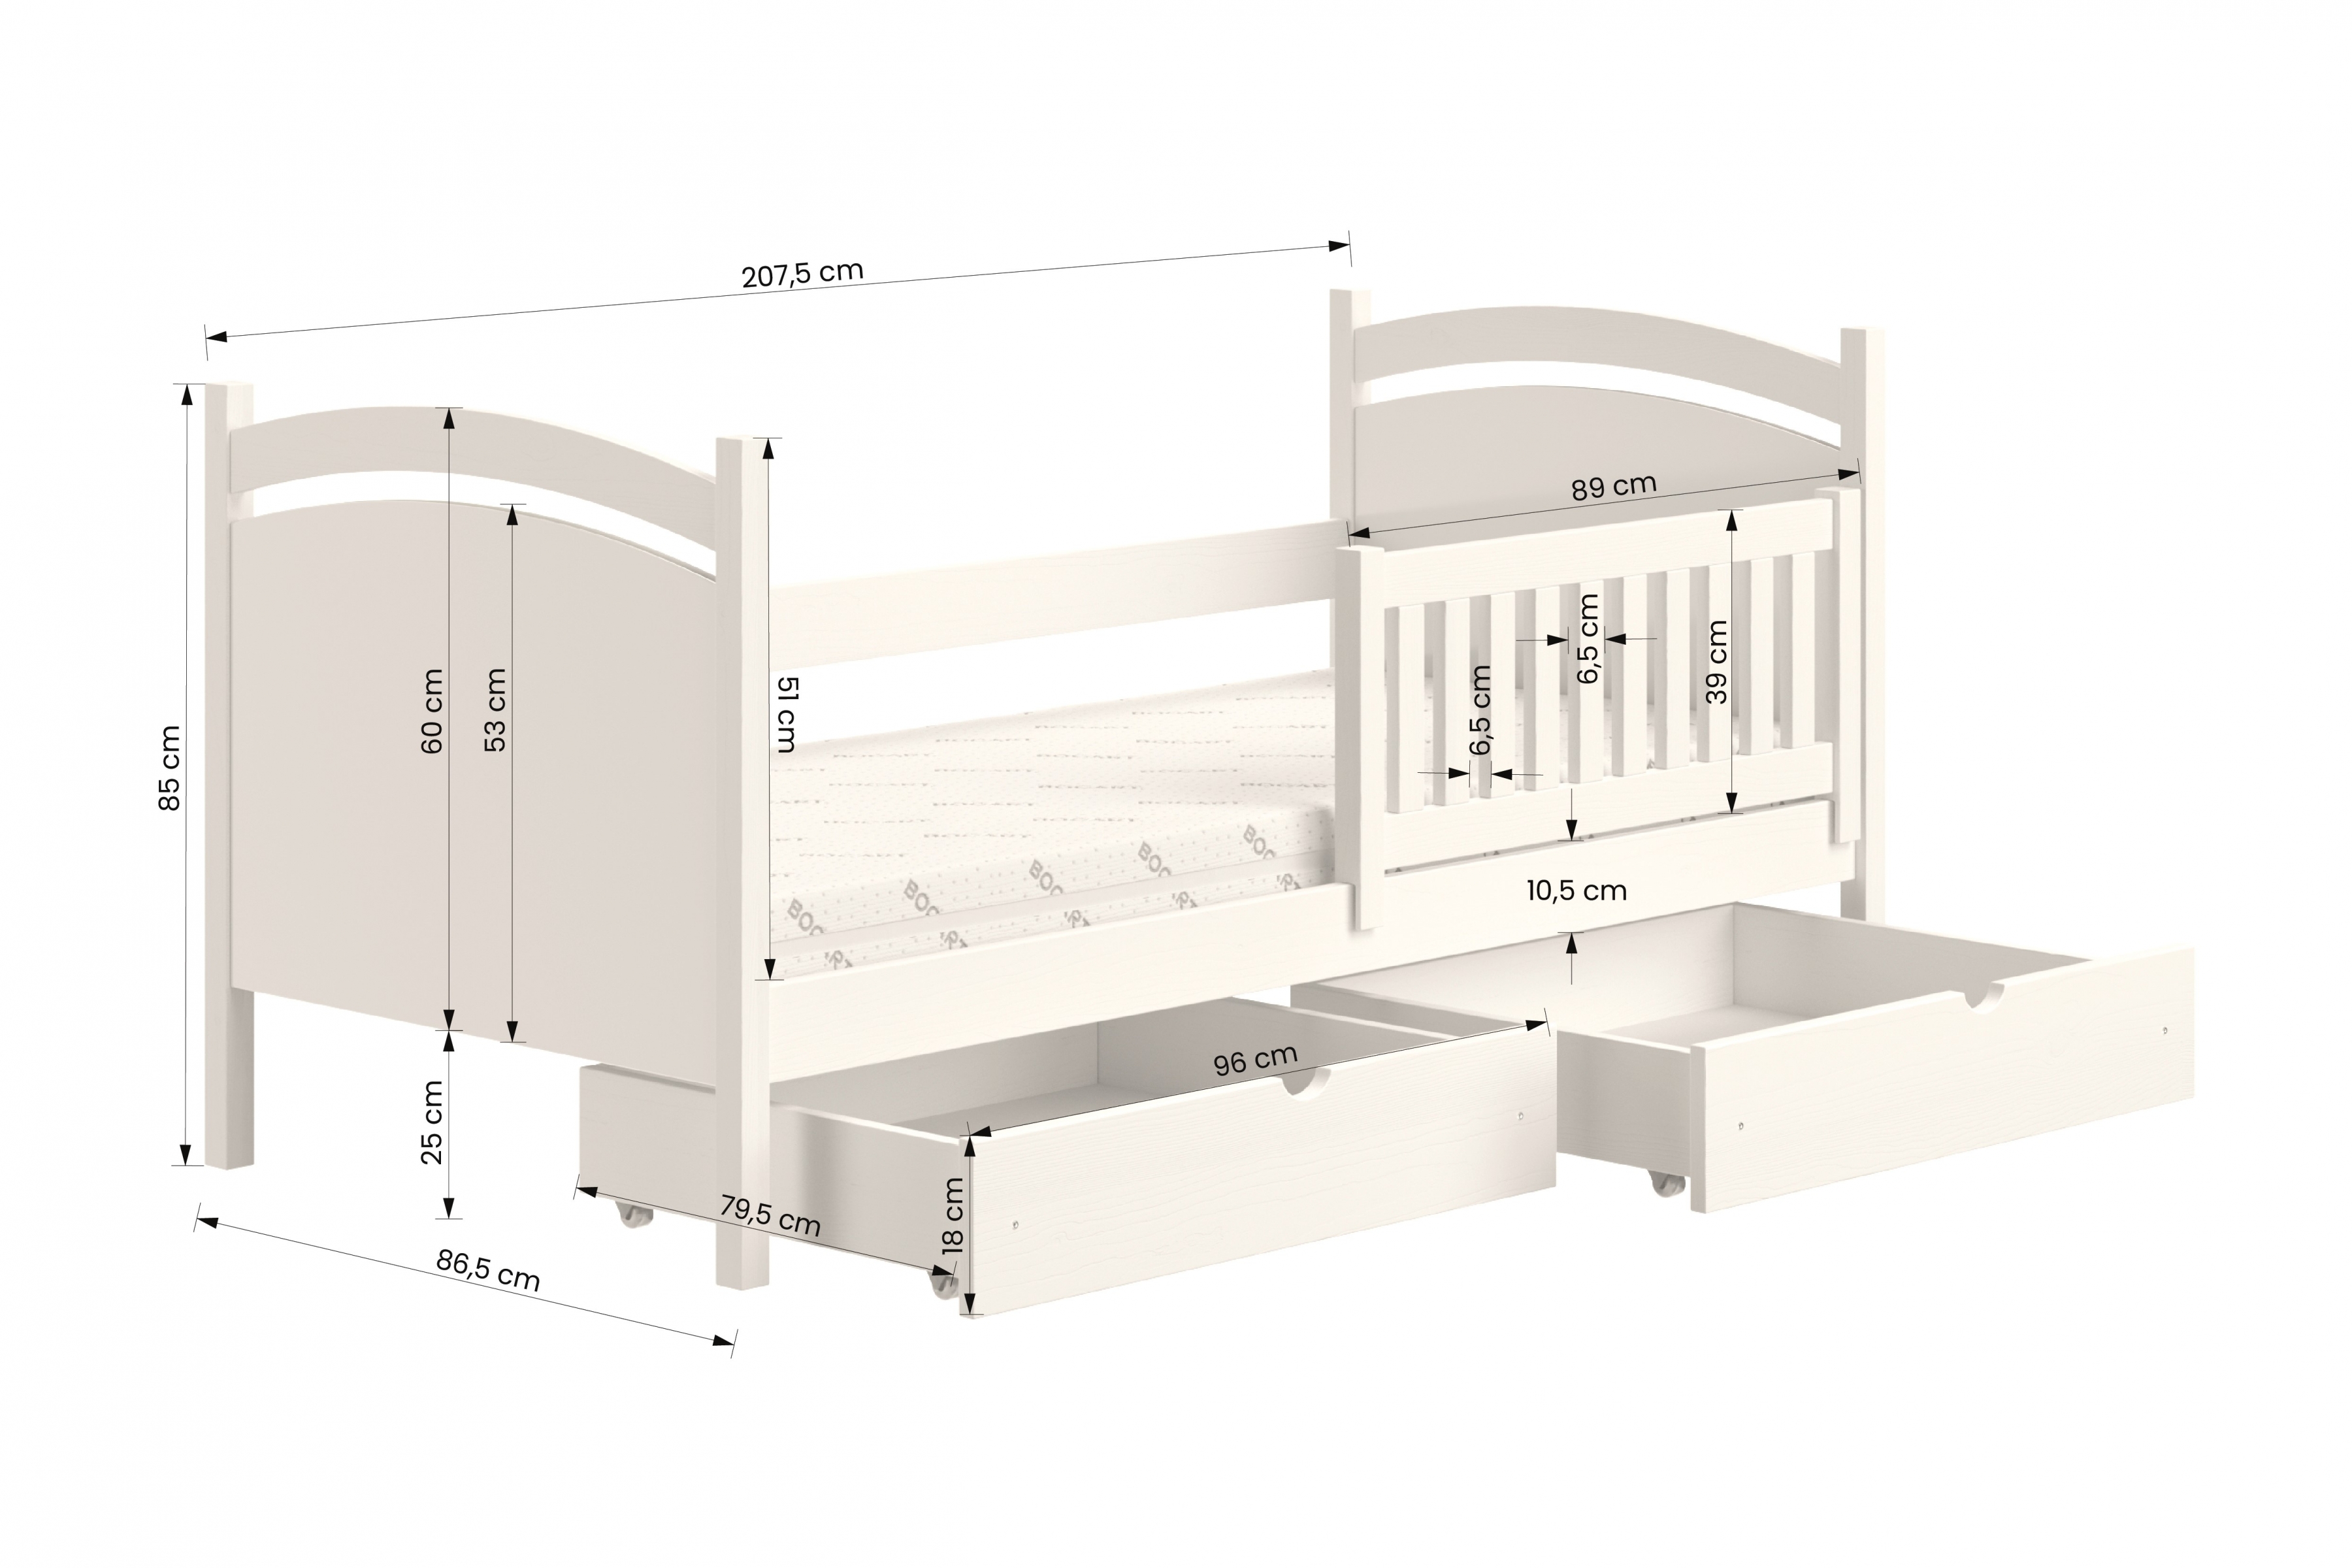 Detská posteľ s tabuľou Amely - Farba Biely, rozmer 80x200 Posteľ dzieciece z tablica suchoscieralna Amely - Rozmery